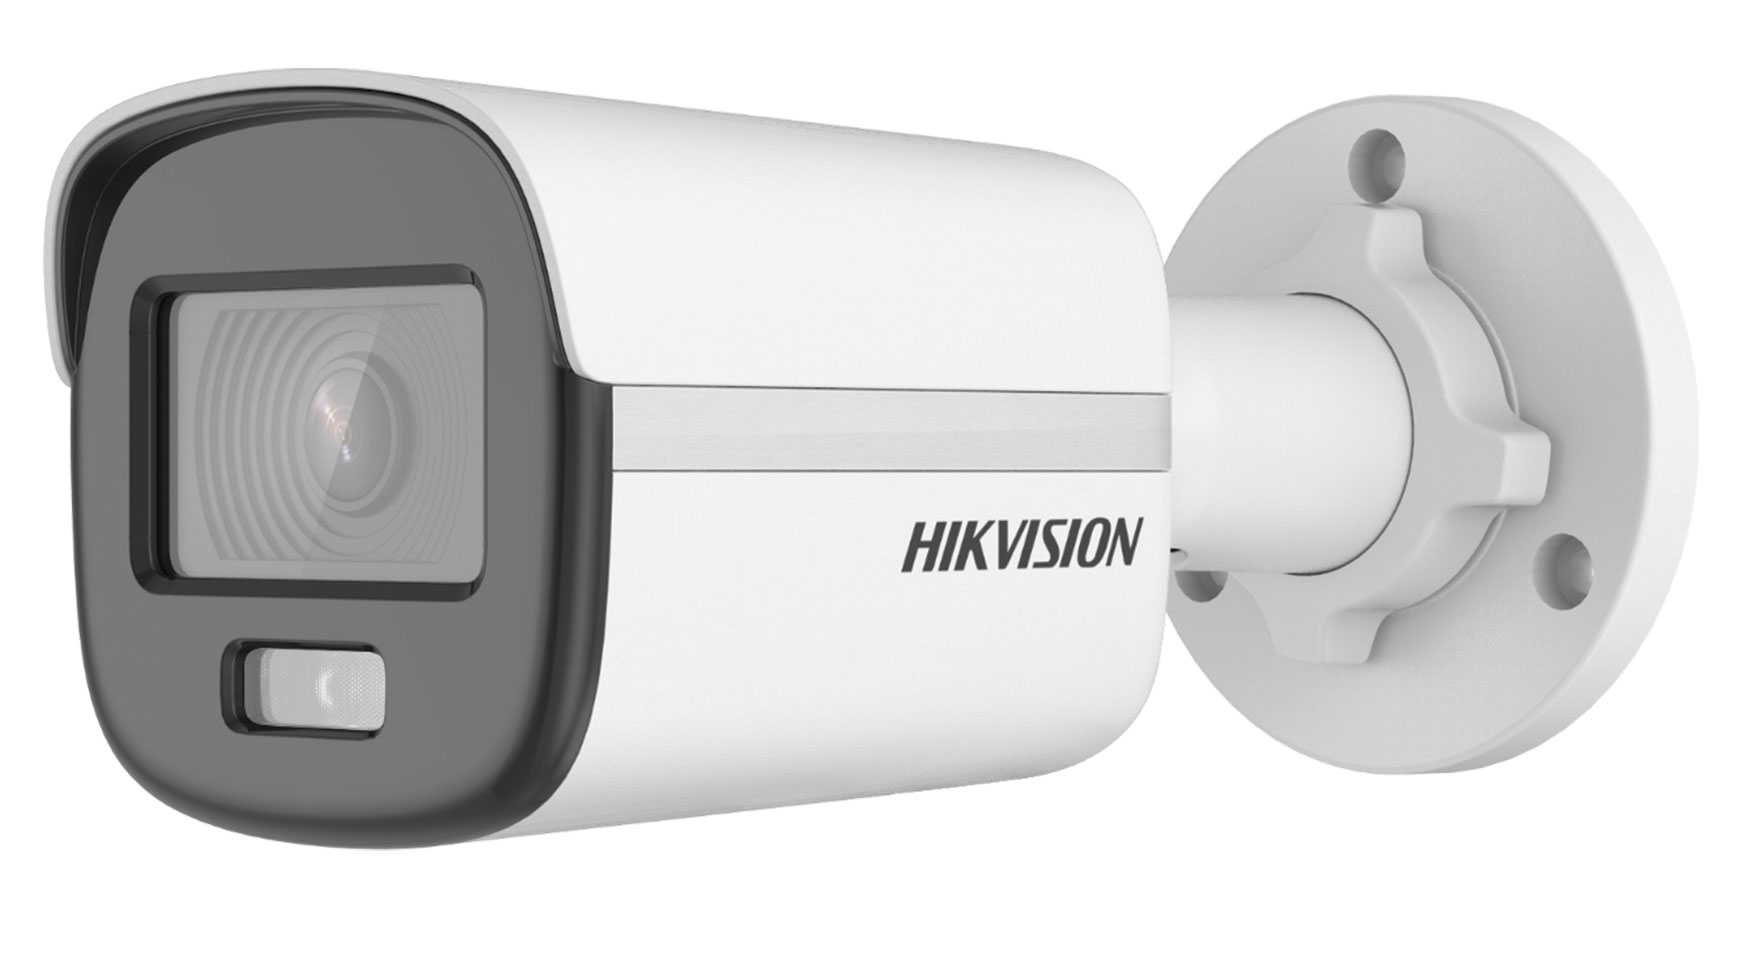 Hikvision DS-2CD1027G0-L(2.8mm) - 2MP mrežna kamera u bullet kućištu sa ColorVu tehnologijom.